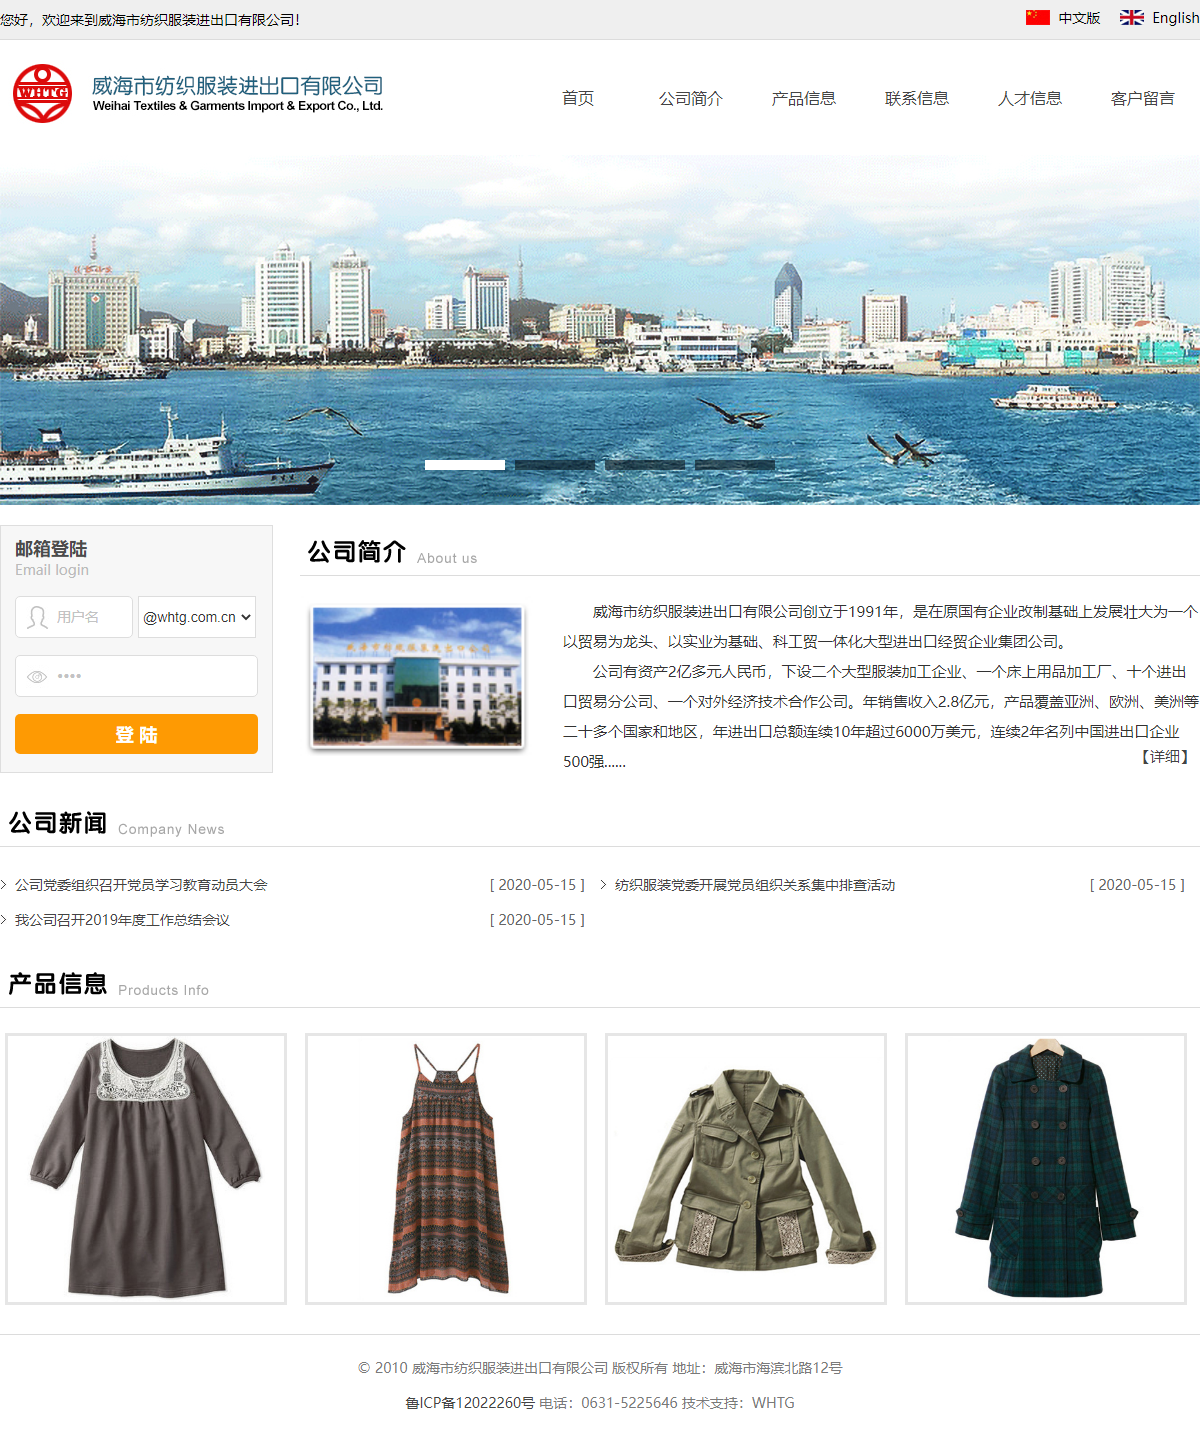 威海市纺织服装进出口有限公司网站案例